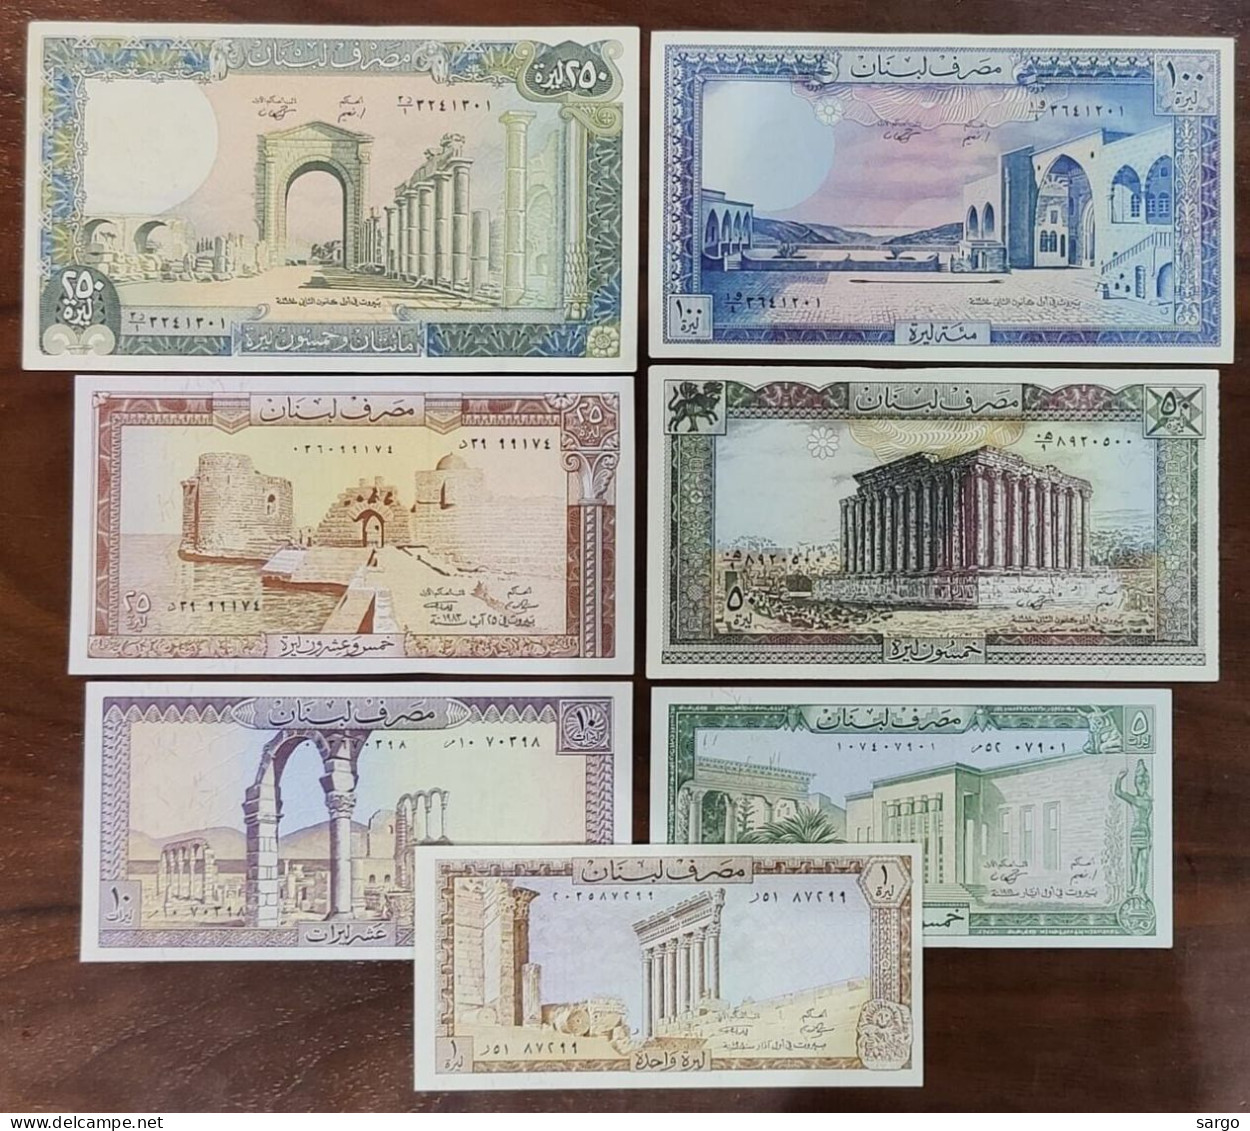 LEBANON - 7 BANKONOTES -  P 6 1 - P 67  (1980 - 1988) - UNC - BANKNOTES - PAPER MONEY - - Liban